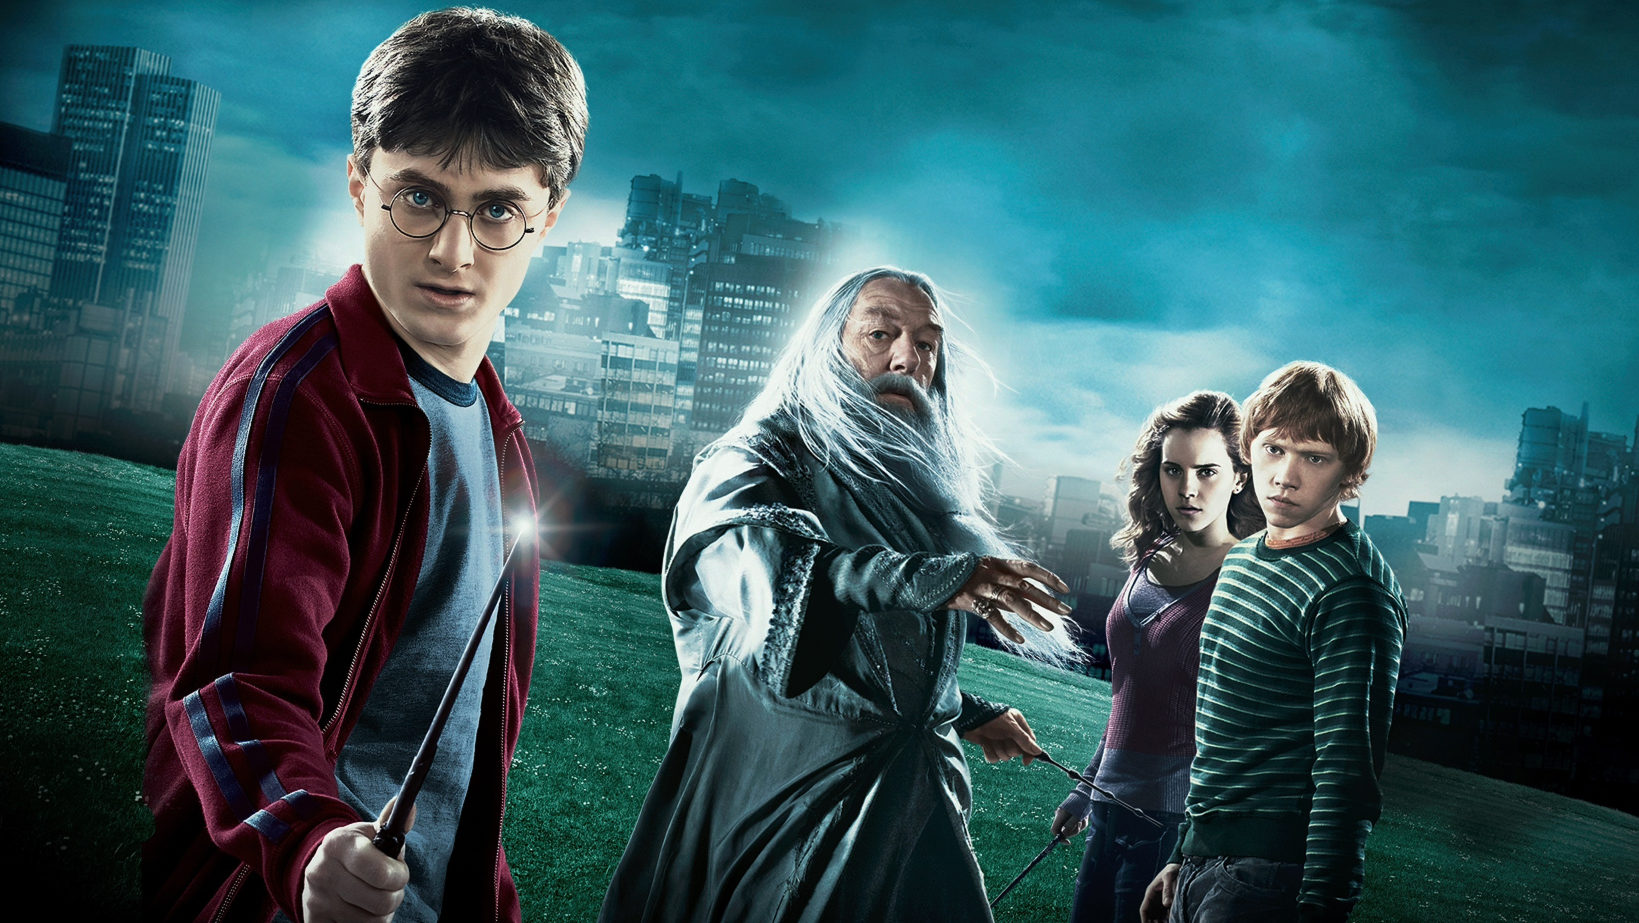 “Harry Potter me transformou em um alcoólatra”, afirma astro da saga